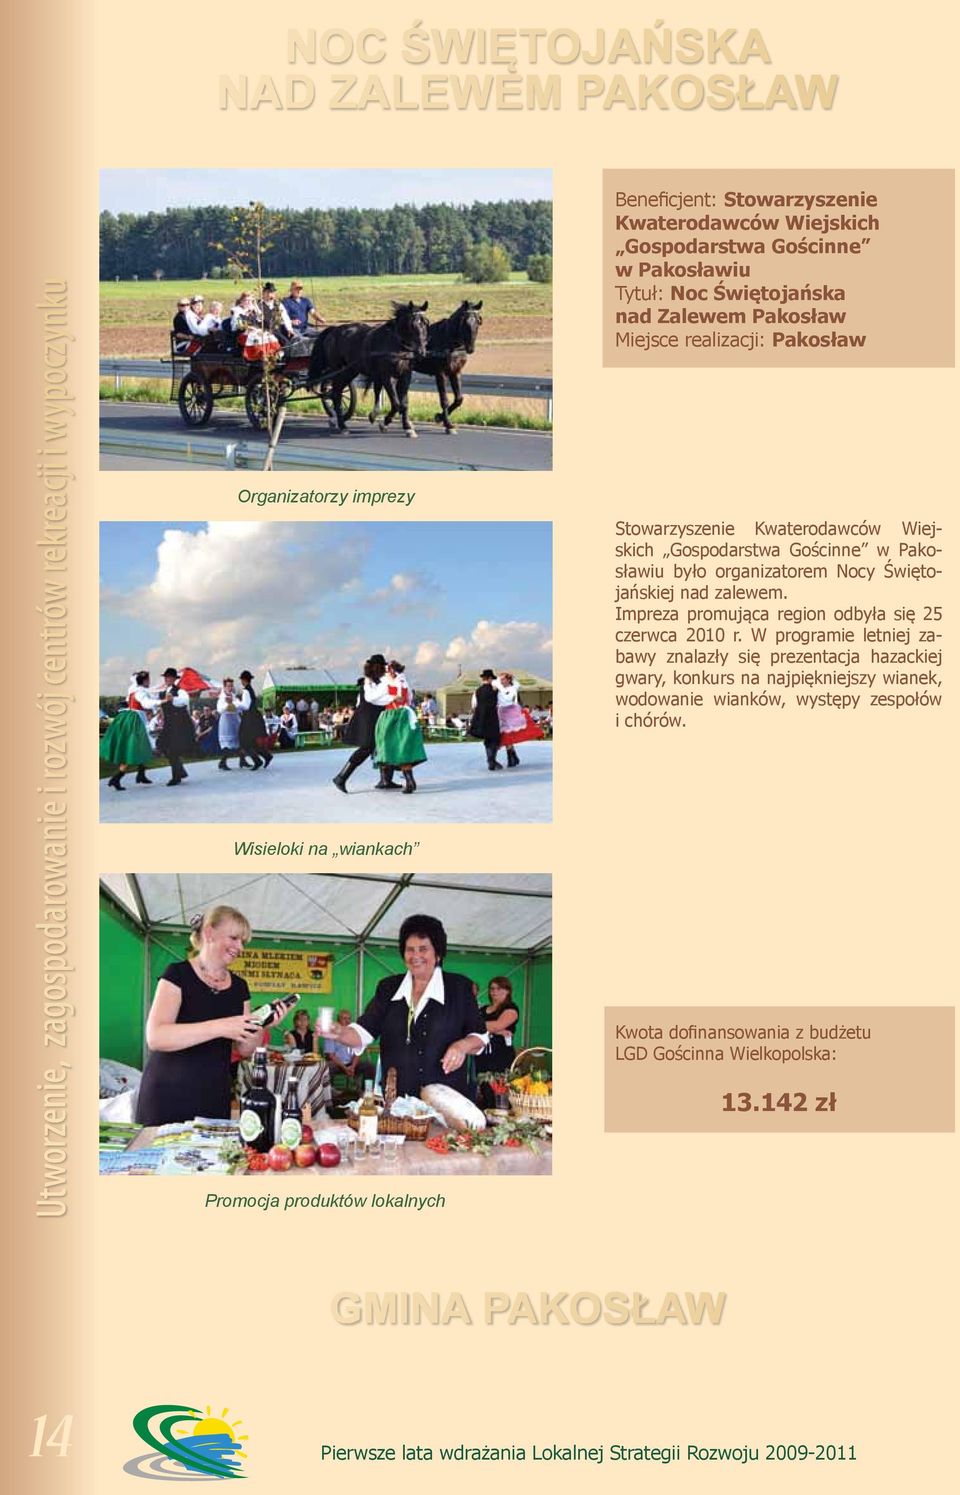 Kwaterodawców Wiejskich Gospodarstwa Gościnne w Pakosławiu było organizatorem Nocy Świętojańskiej nad zalewem. Impreza promująca region odbyła się 25 czerwca 2010 r.